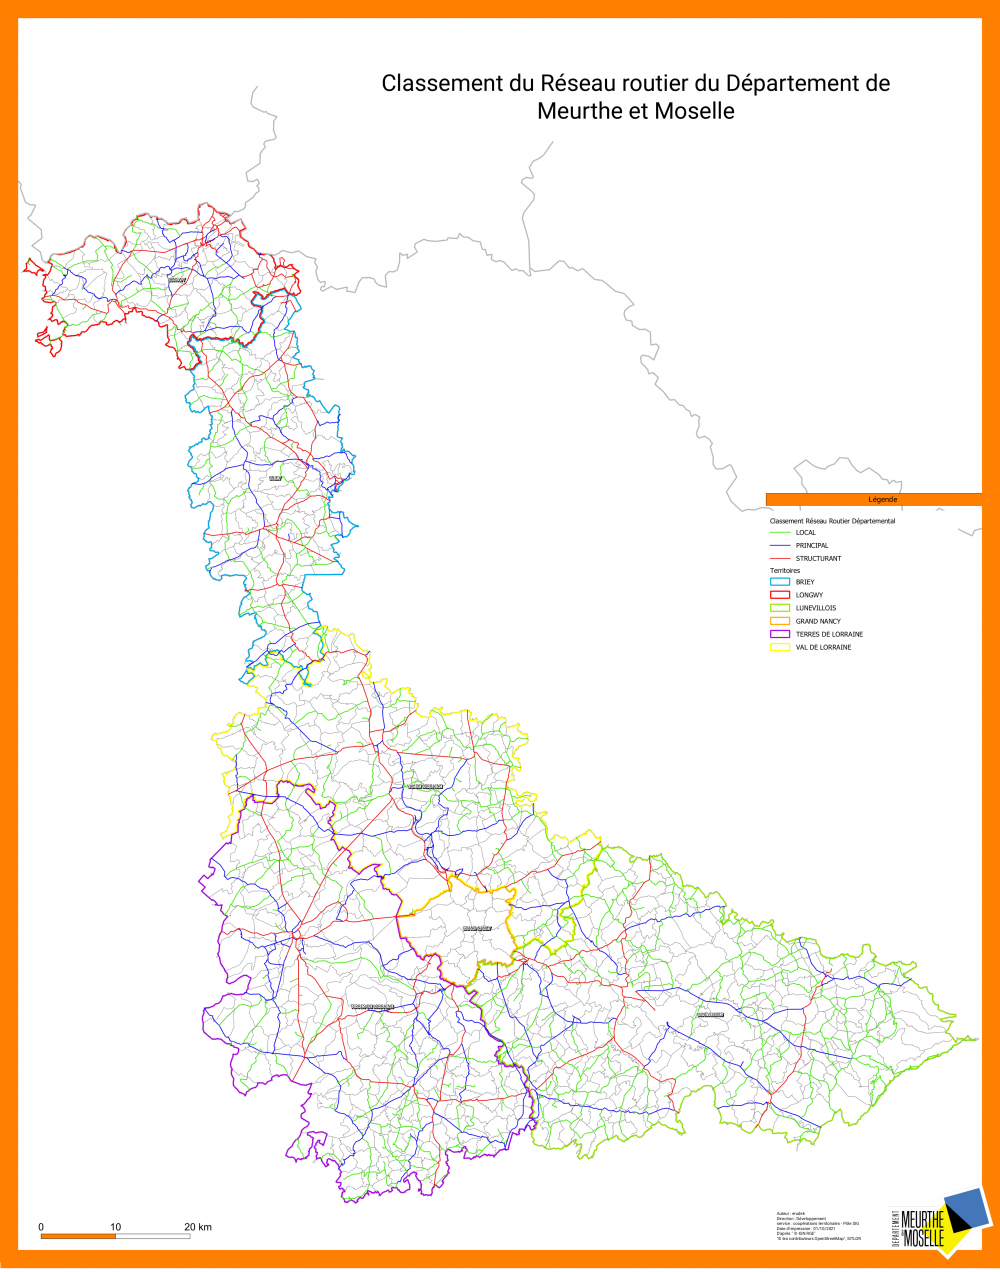 Classement du réseau routier de Meurthe et Moselle